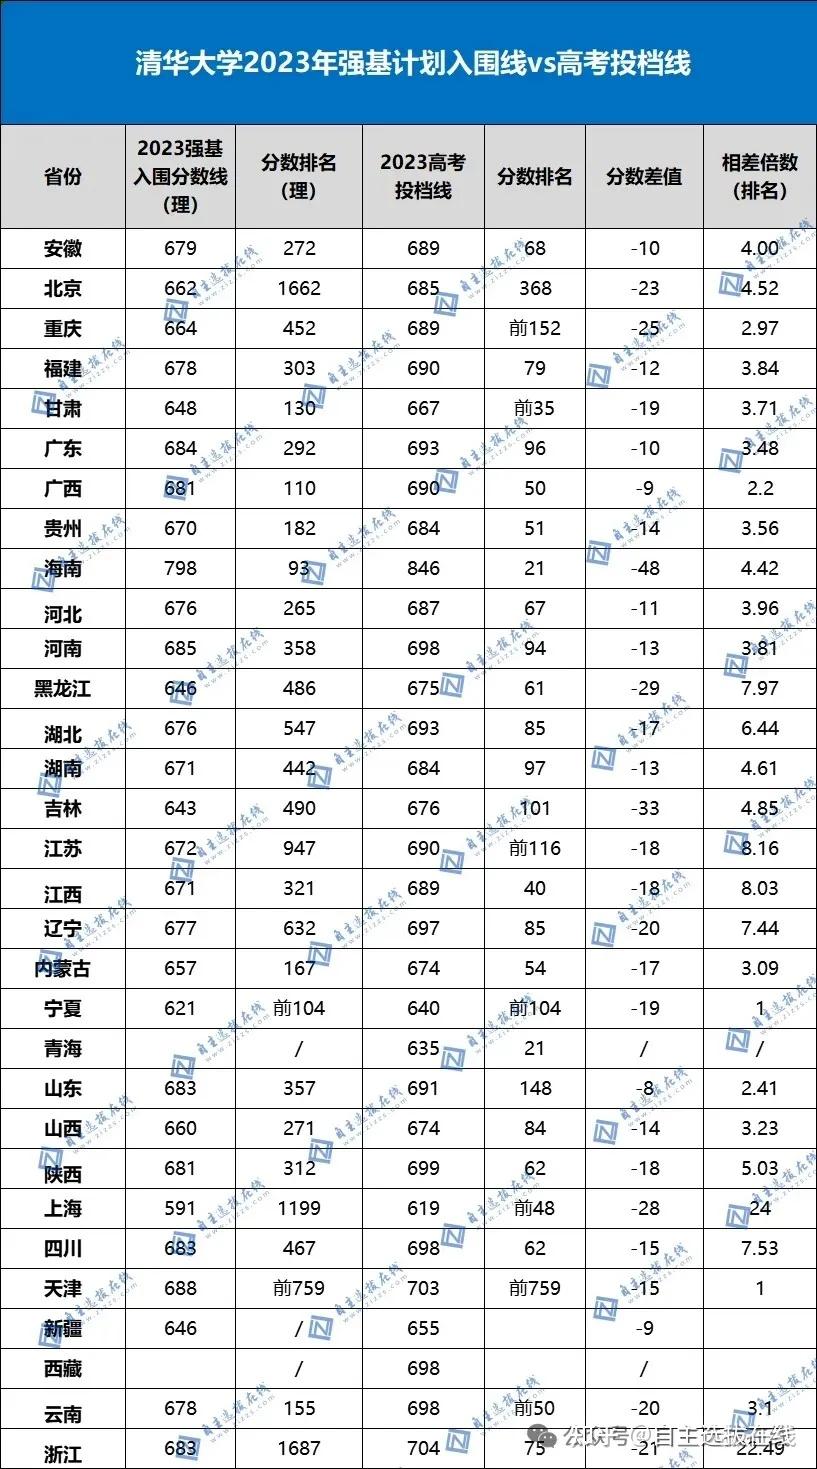 清华大学2023年共录取内地本科生3500余人,其中强基计划录取了898人